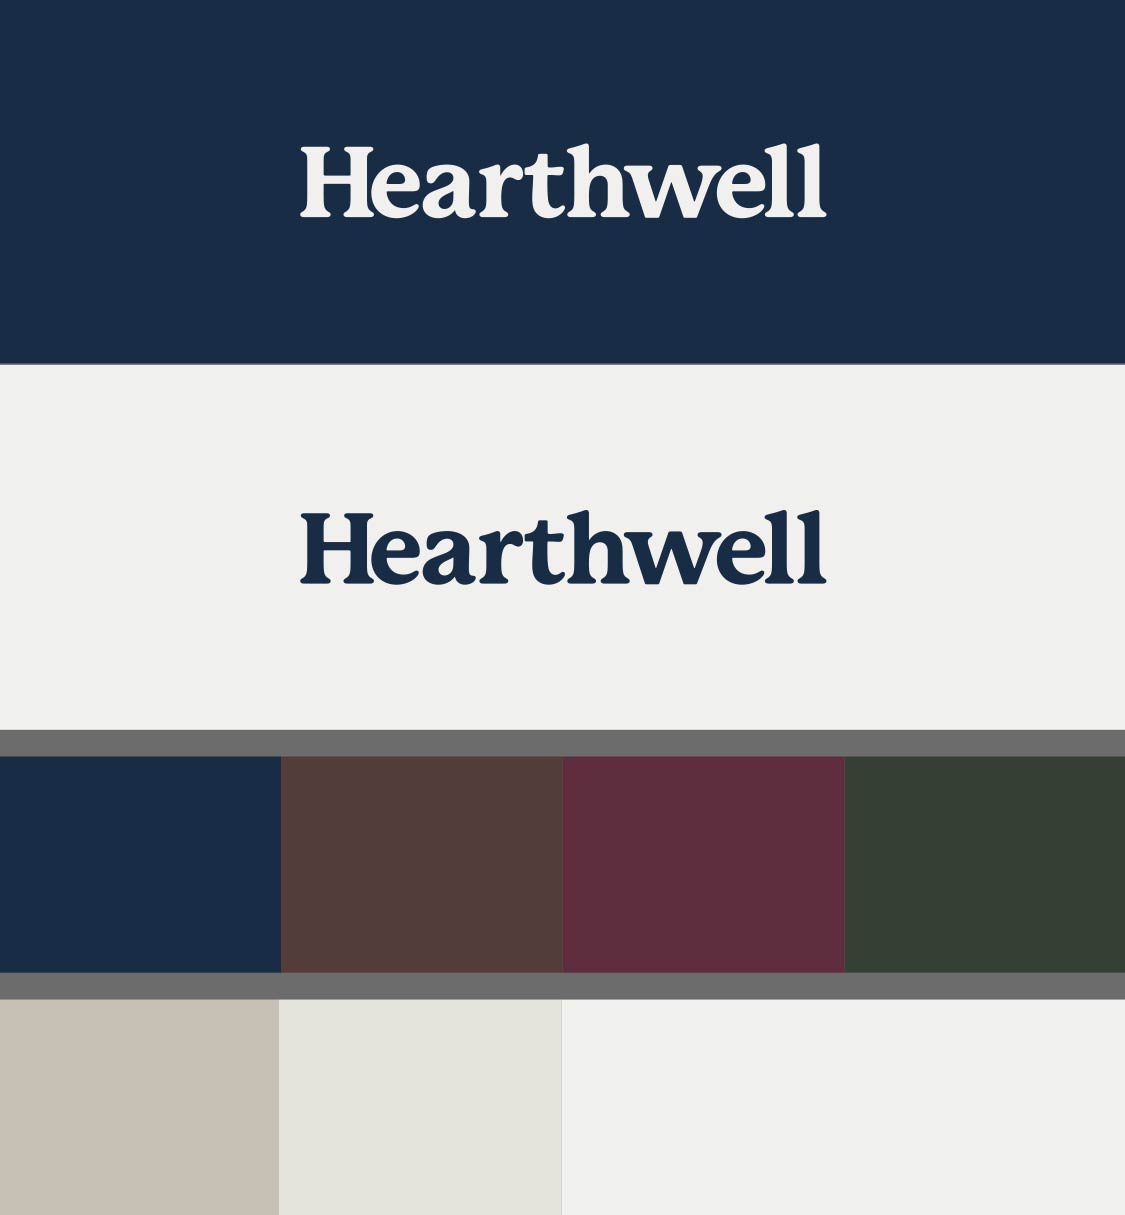 Hearthwell Brand Elements